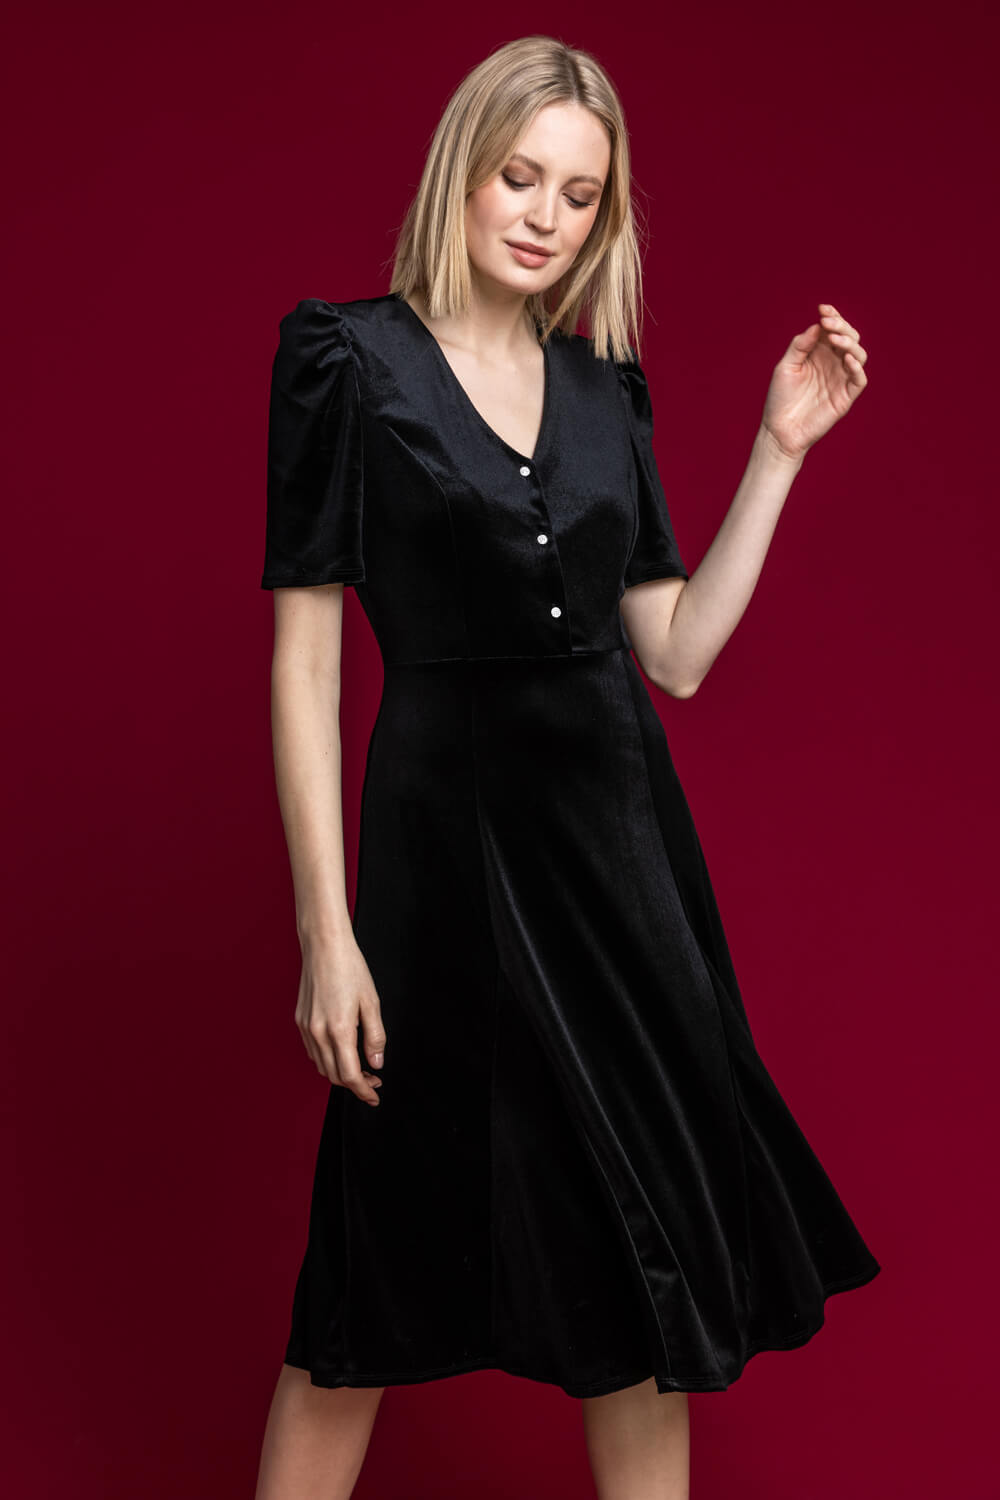 Velvet for the Holidays: Black Velvet Wrap Dress, Embellished